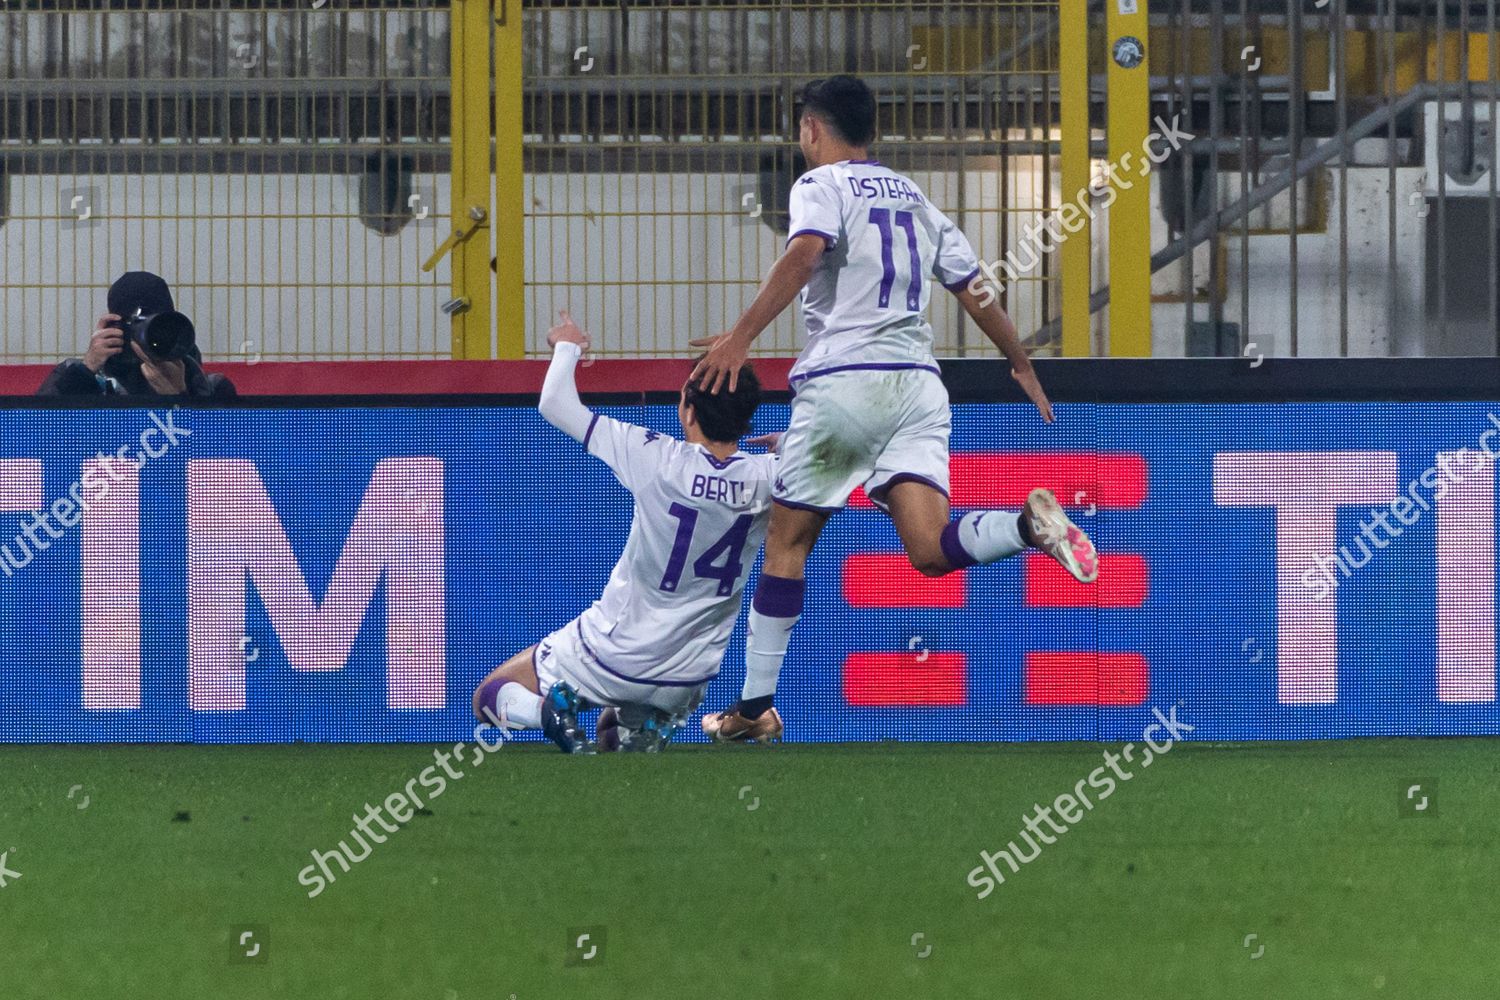 FC Internazionale U19 v ACF Fiorentina U19 - Supercoppa Primavera Tommaso  Berti of ACF Fiorentina